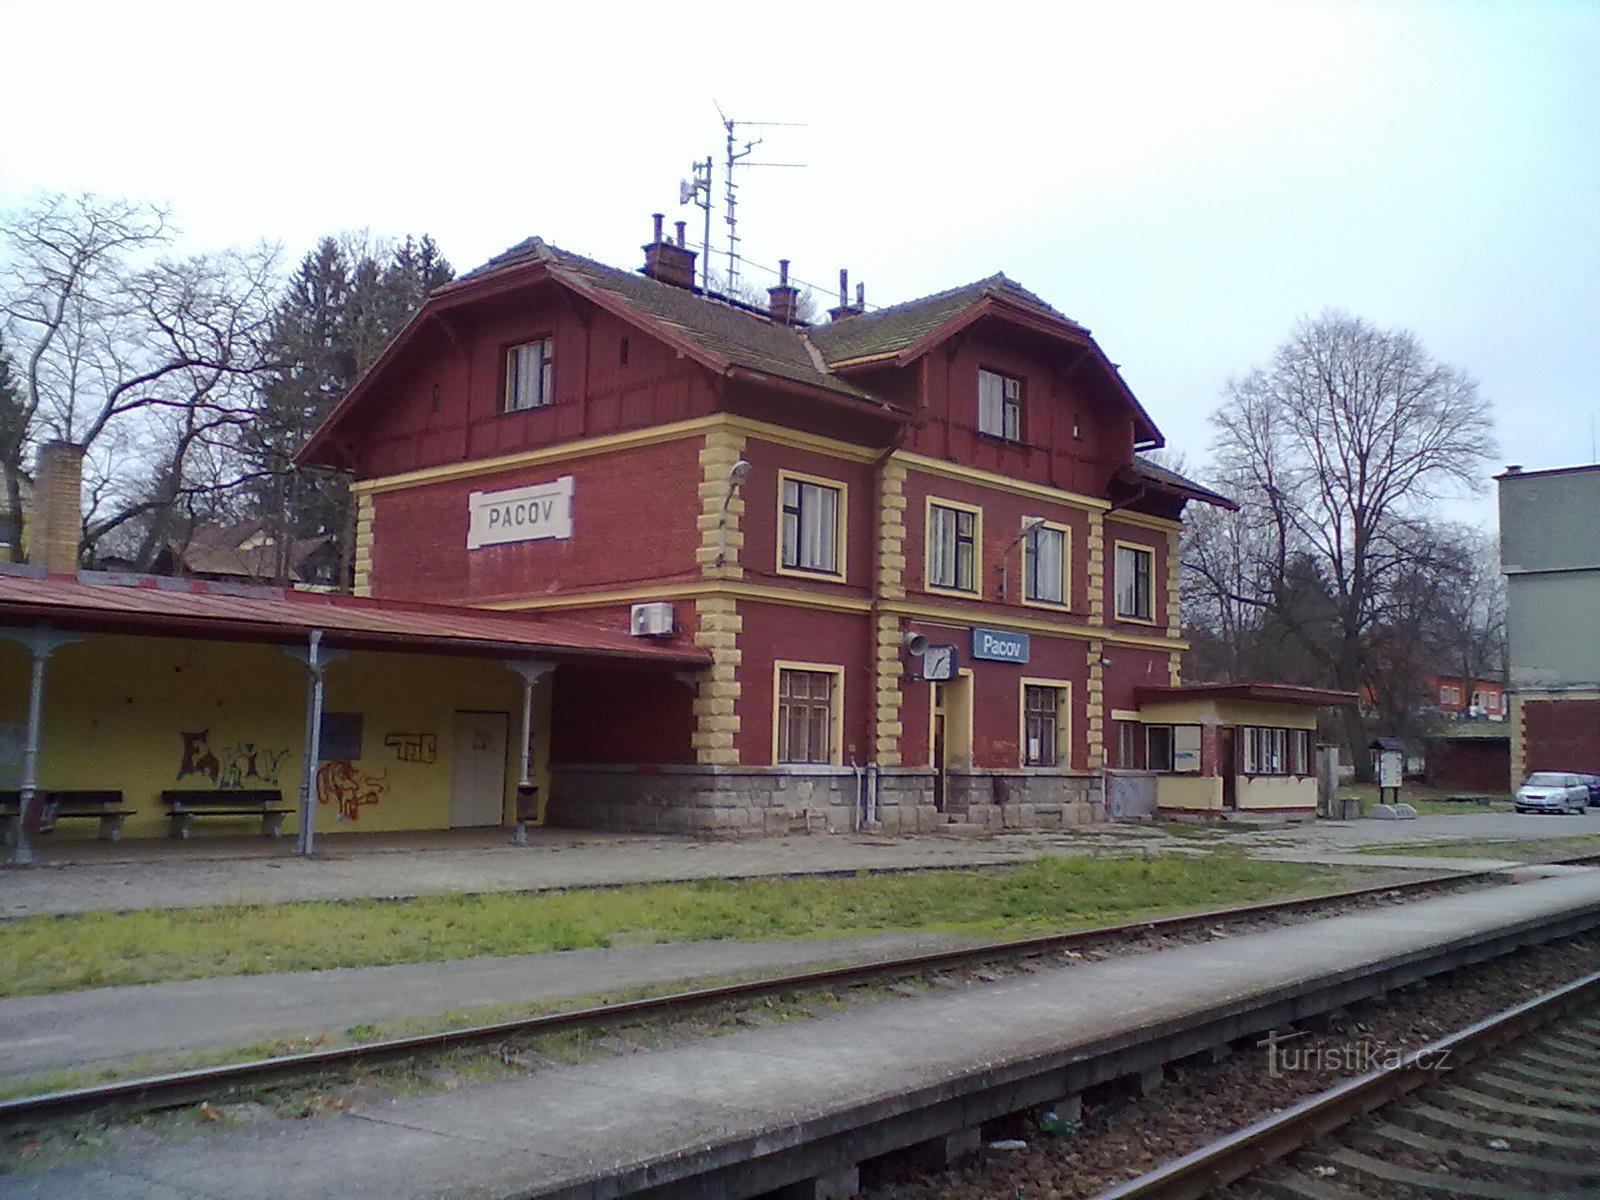 2. Bahnhof in Pacov, Start und Ziel unserer Wanderung.